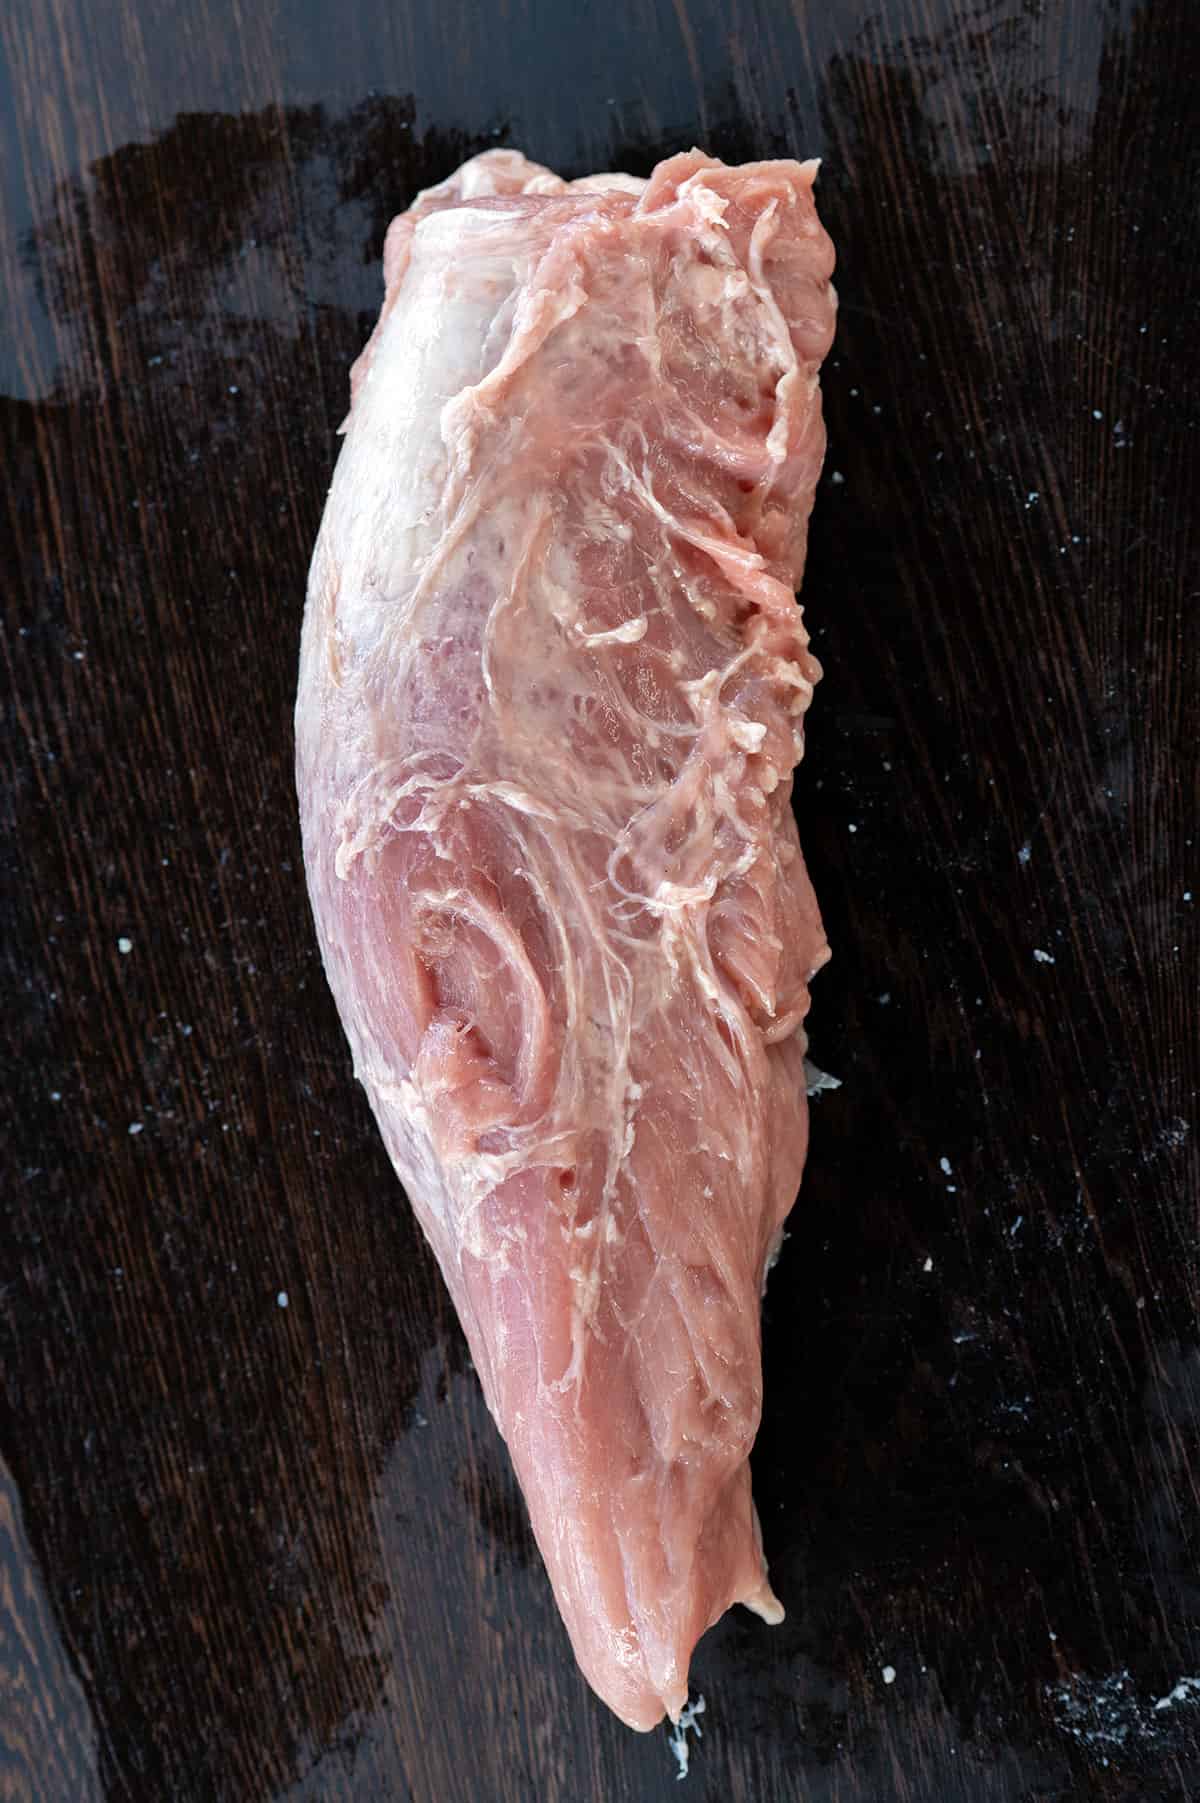 pork tenderloin before trimming.